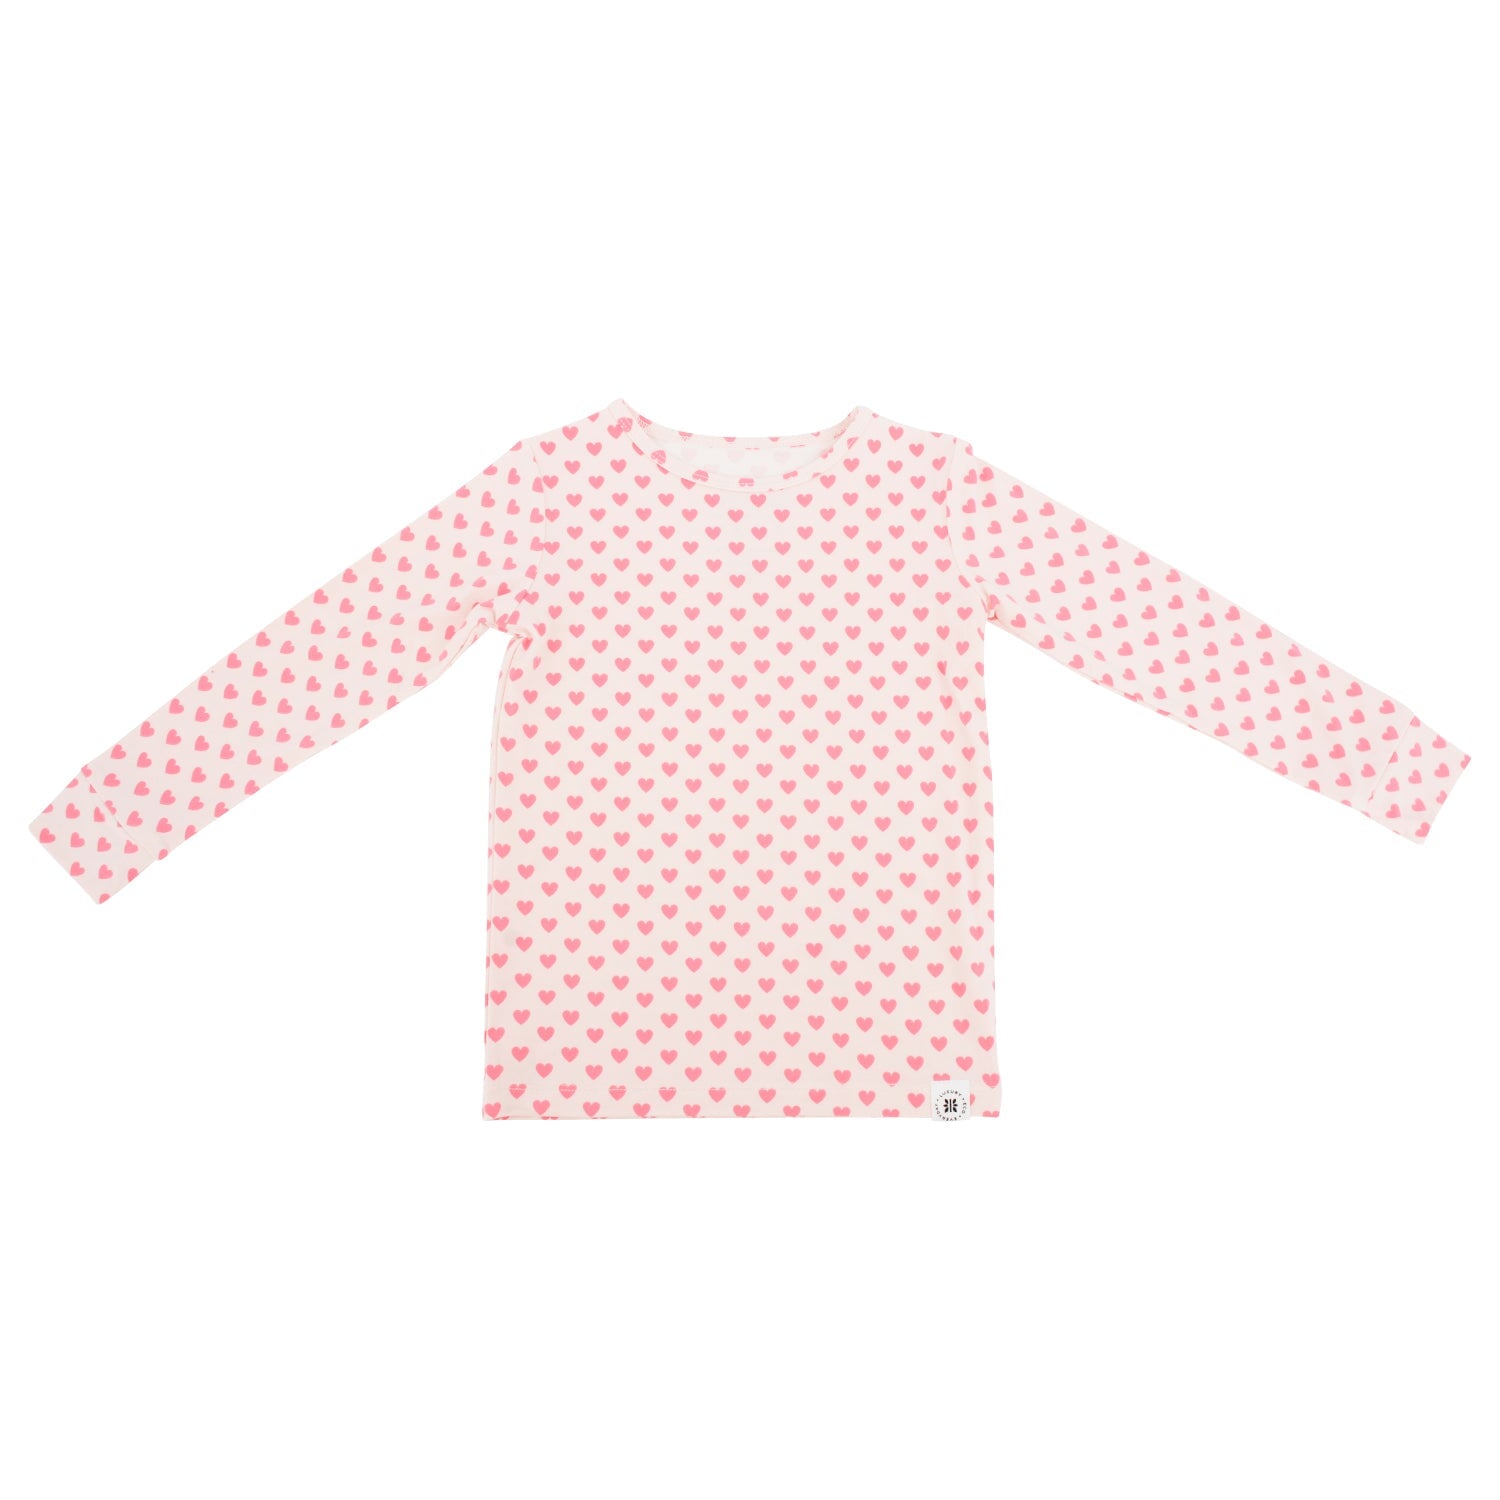 Big Kid Pajama - Pink Hearts